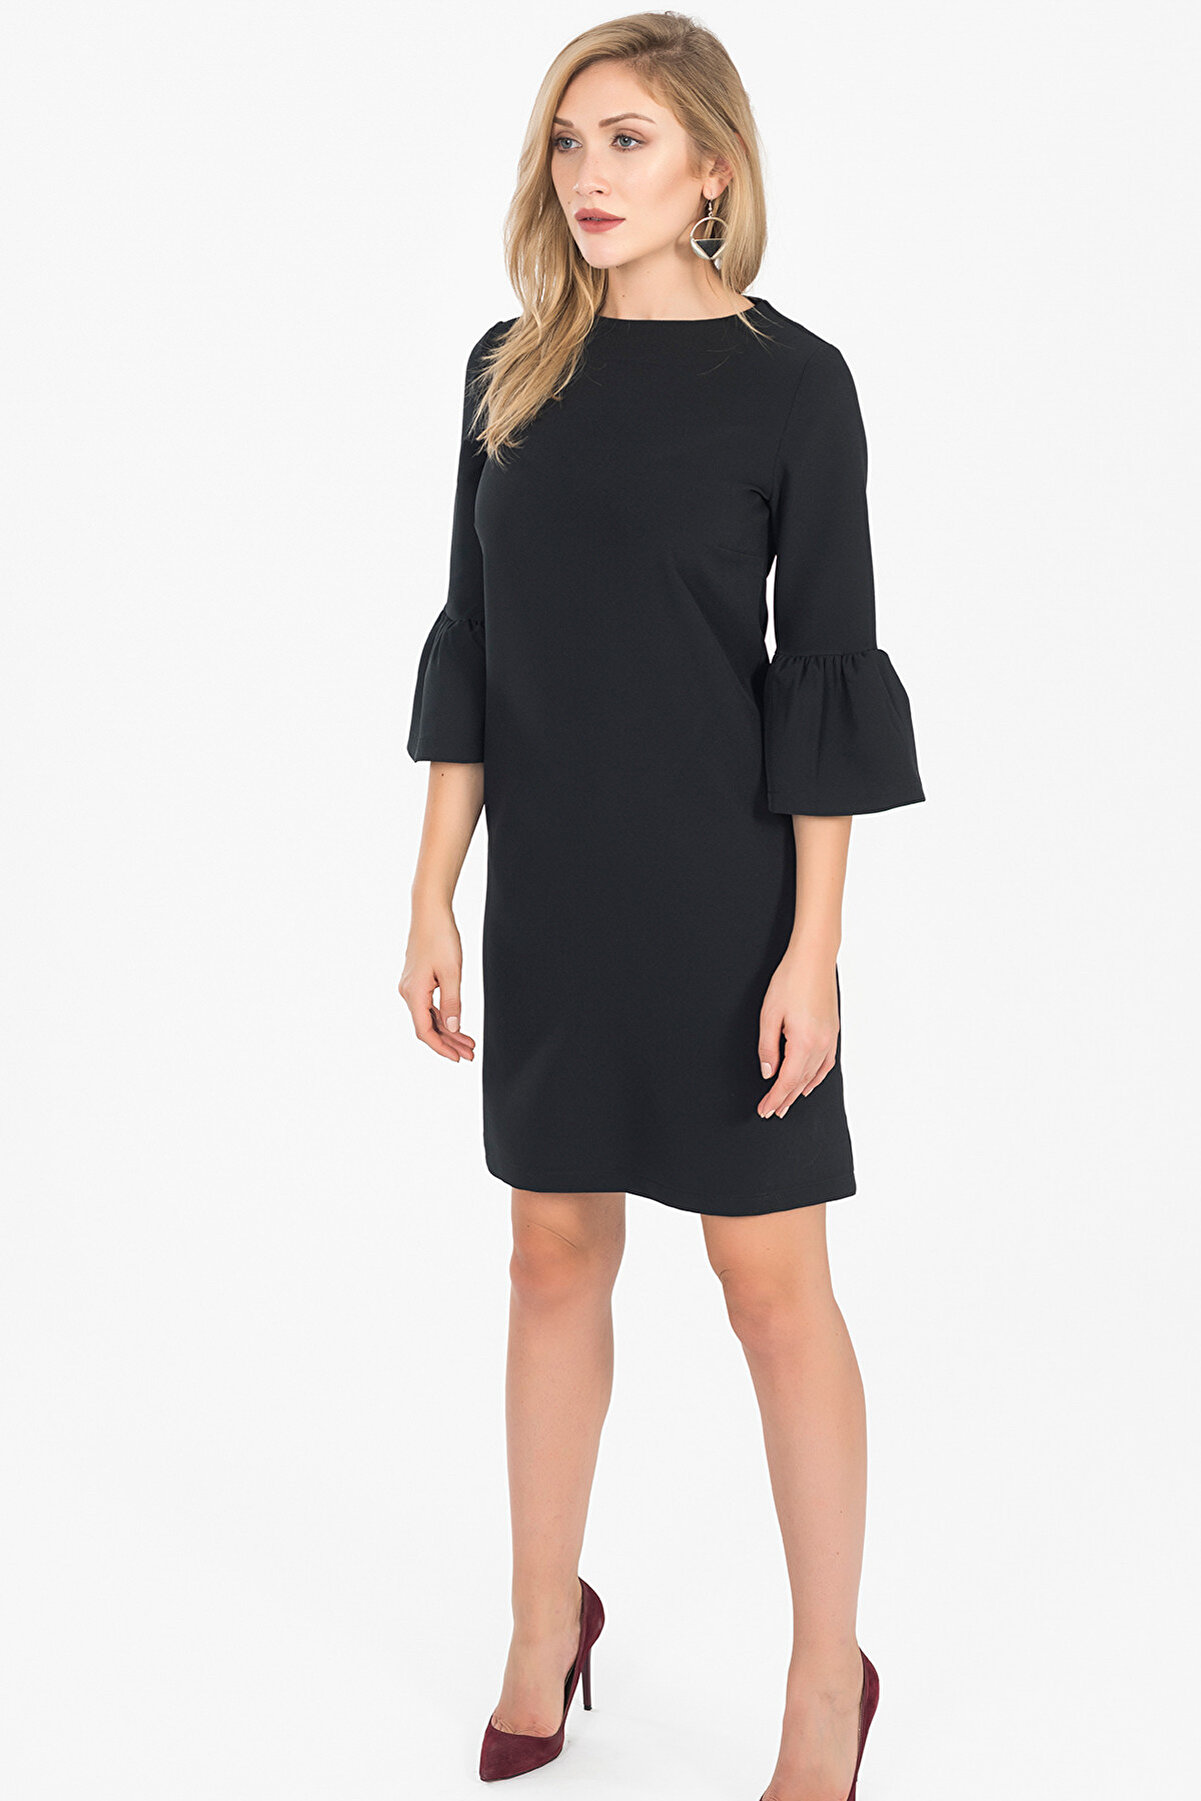 İroni Kadın Siyah İspanyol Kollu Mini Elbise 5056-891